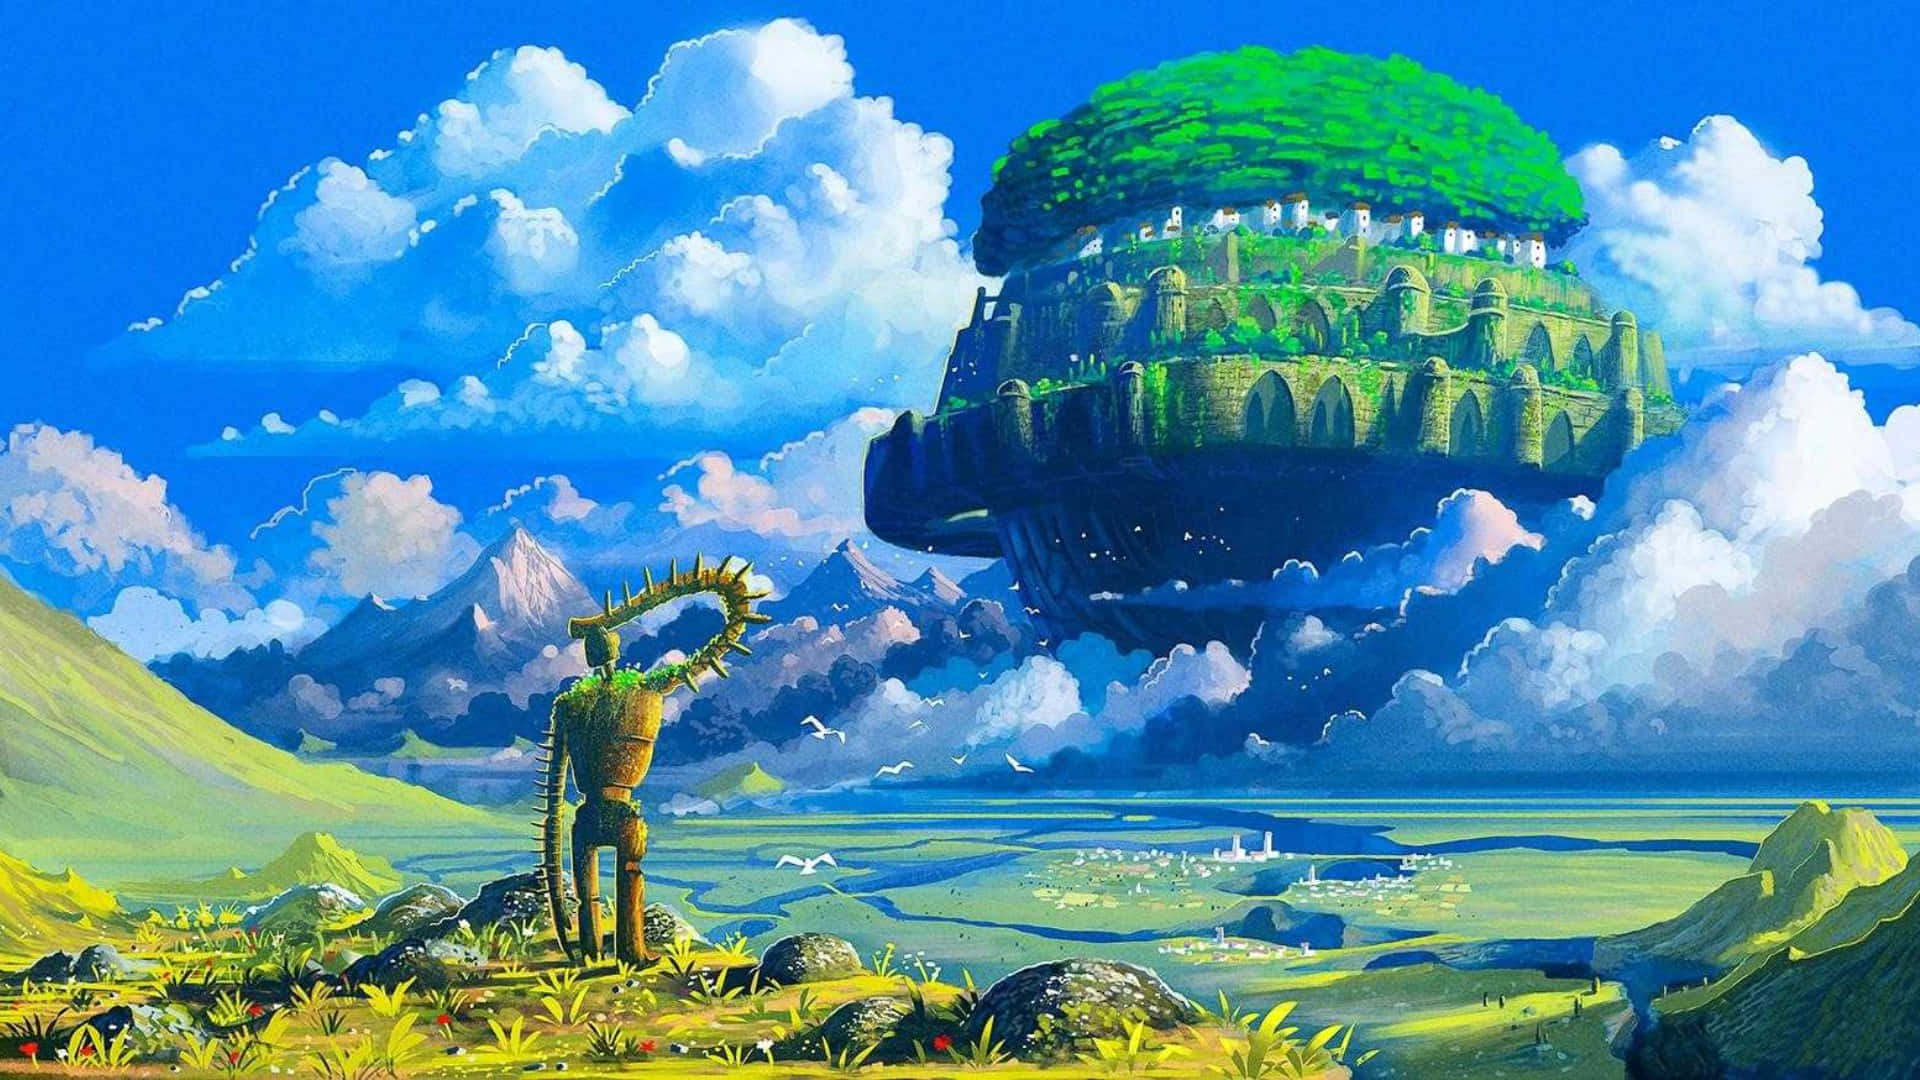 Magical World of Studio Ghibli